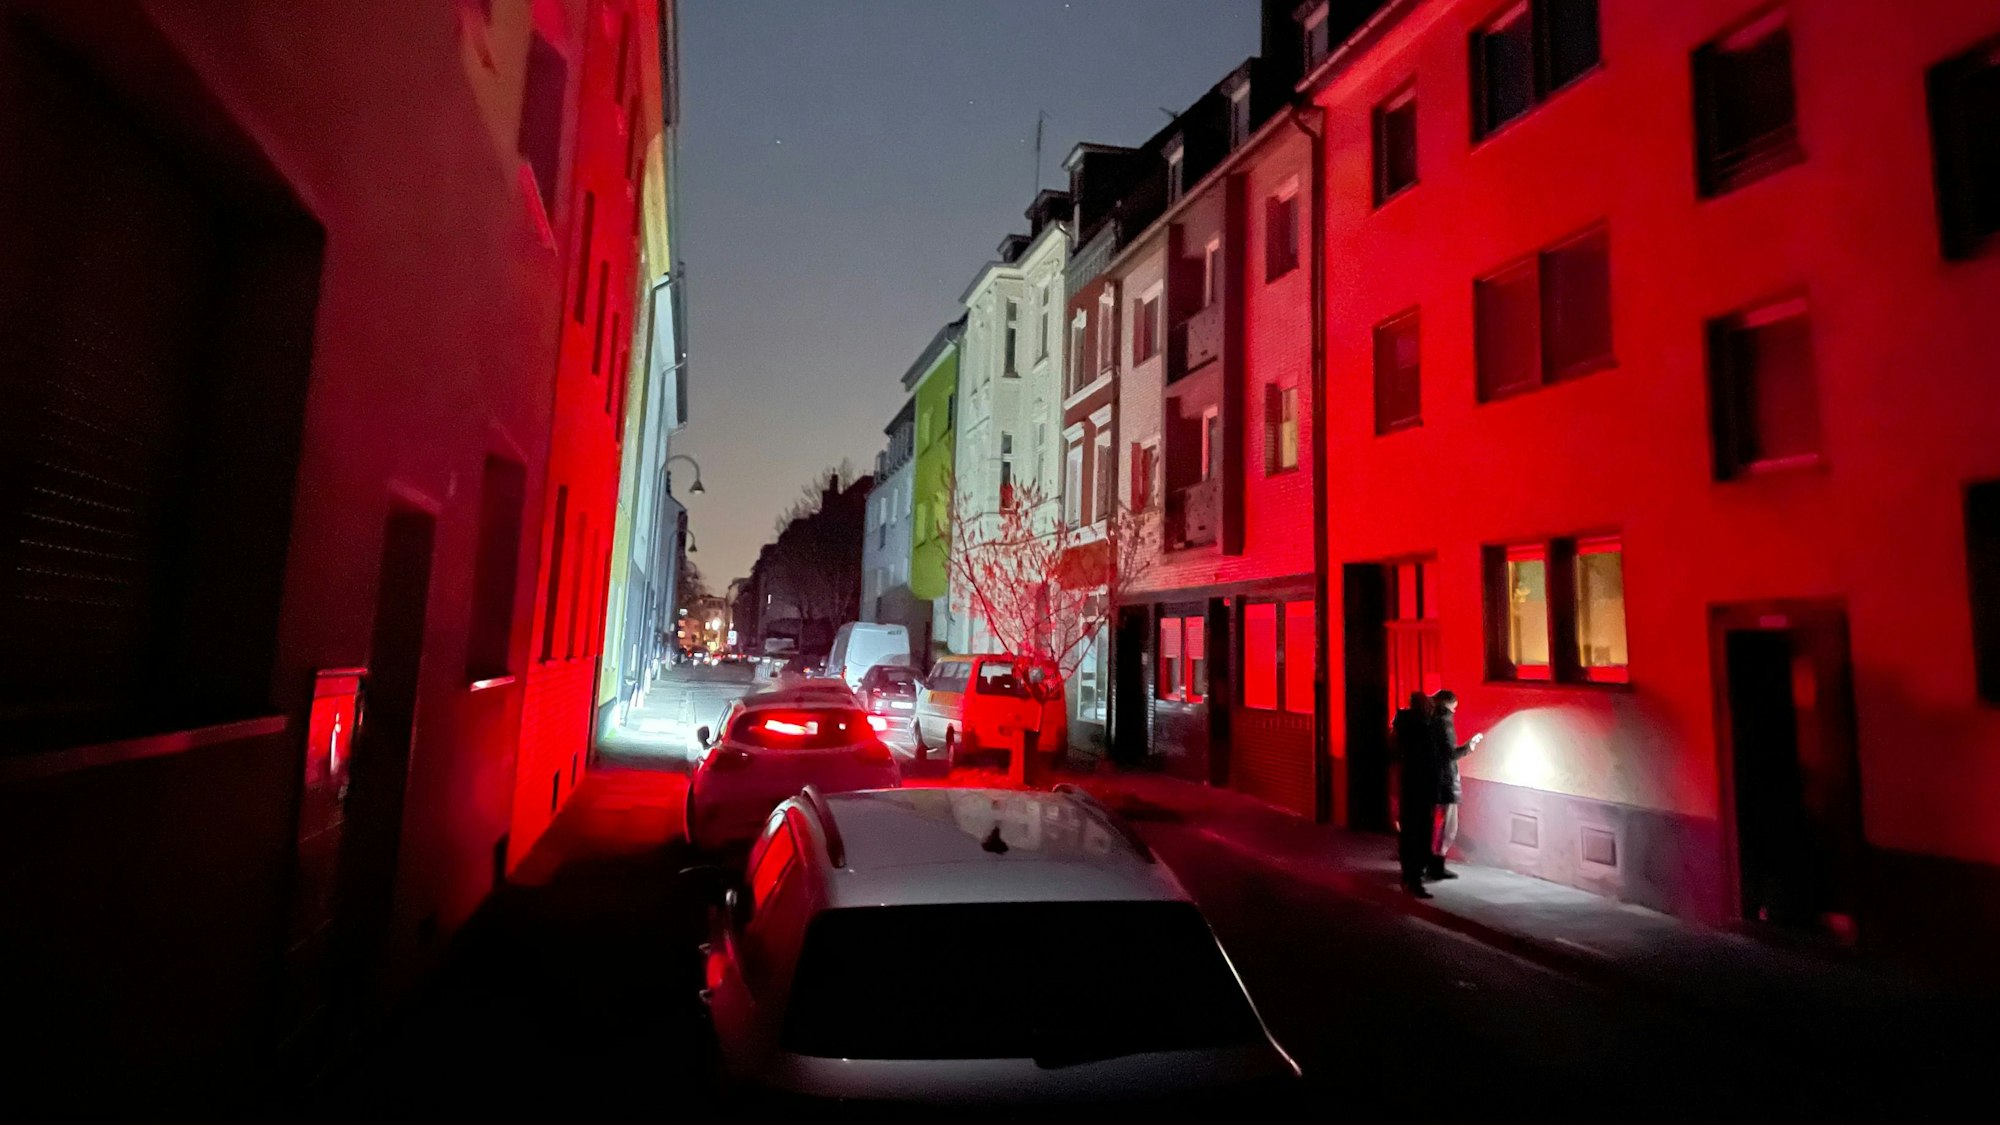 Stromausfall in Köln-Mülheim: Eine Straße ist dunkel, Licht gibt es nur von Autos und Taschenlampen.